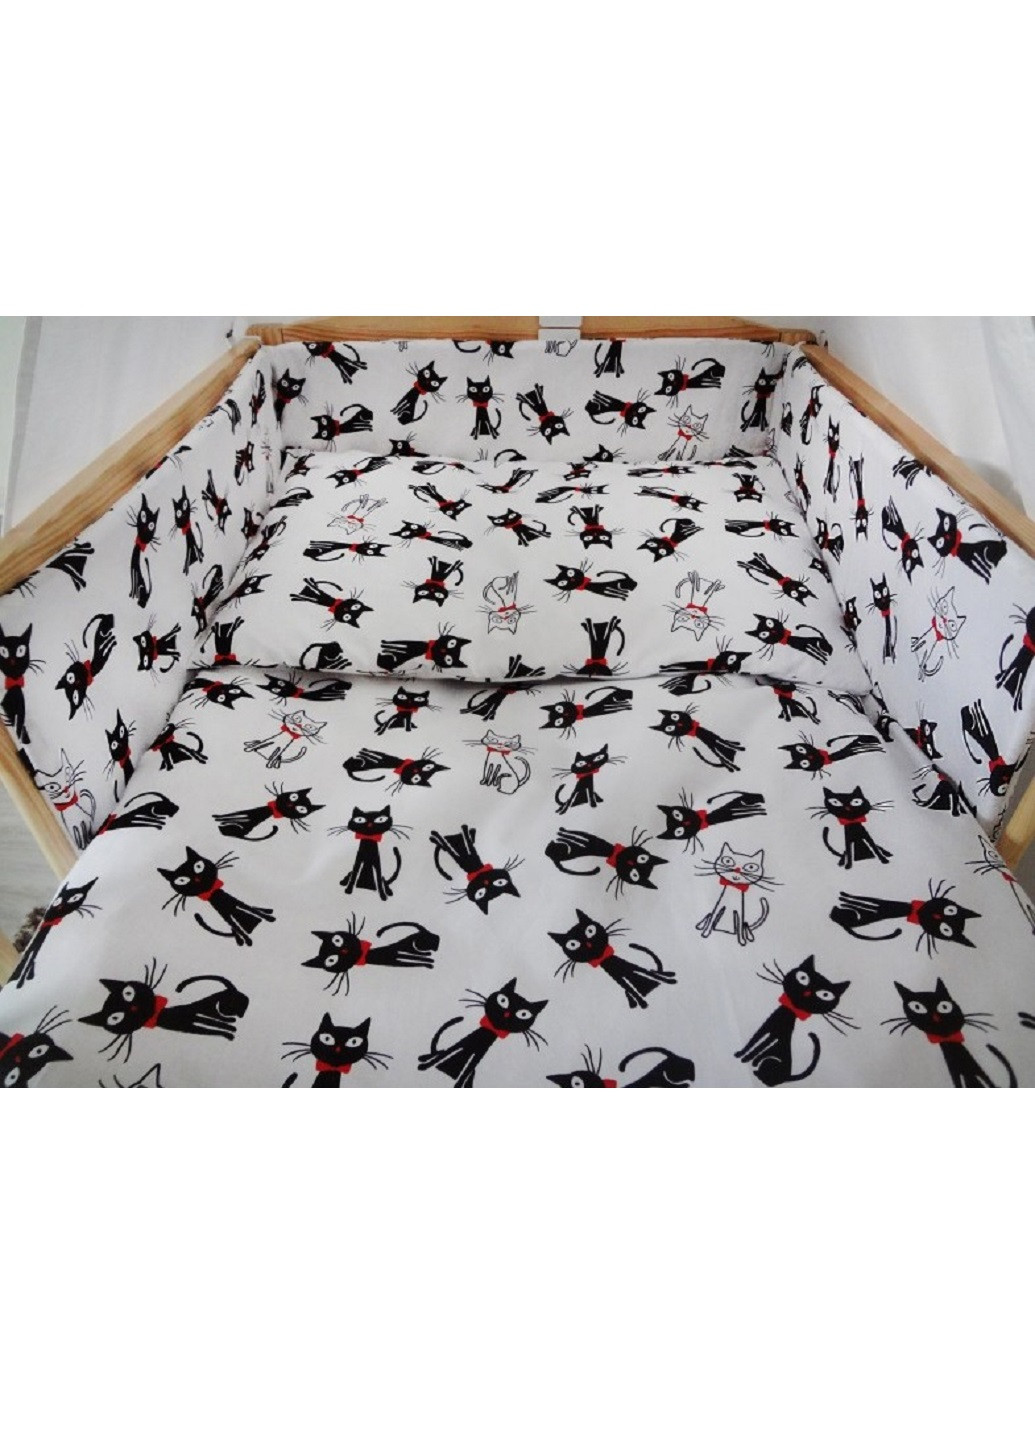 Комплект в детскую кроватку кровать люльку набор бортики защита на три стороны постельное белье ручной работы (28541-Нов) Unbranded (253162751)